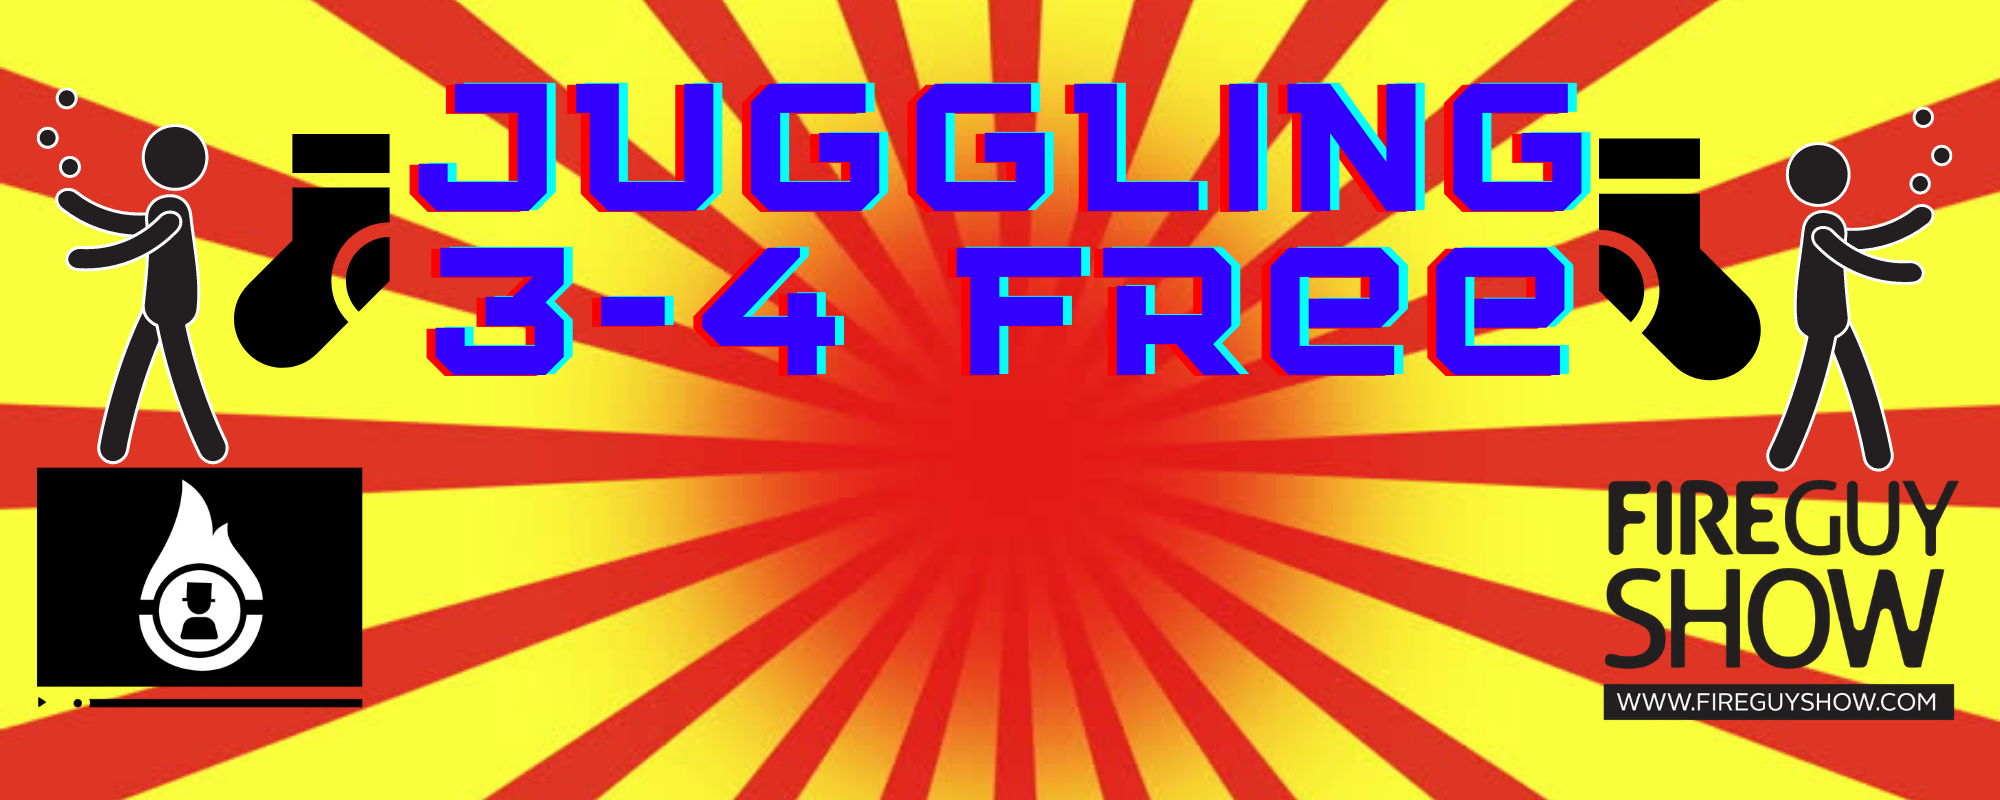 Juggling 3-4 Free